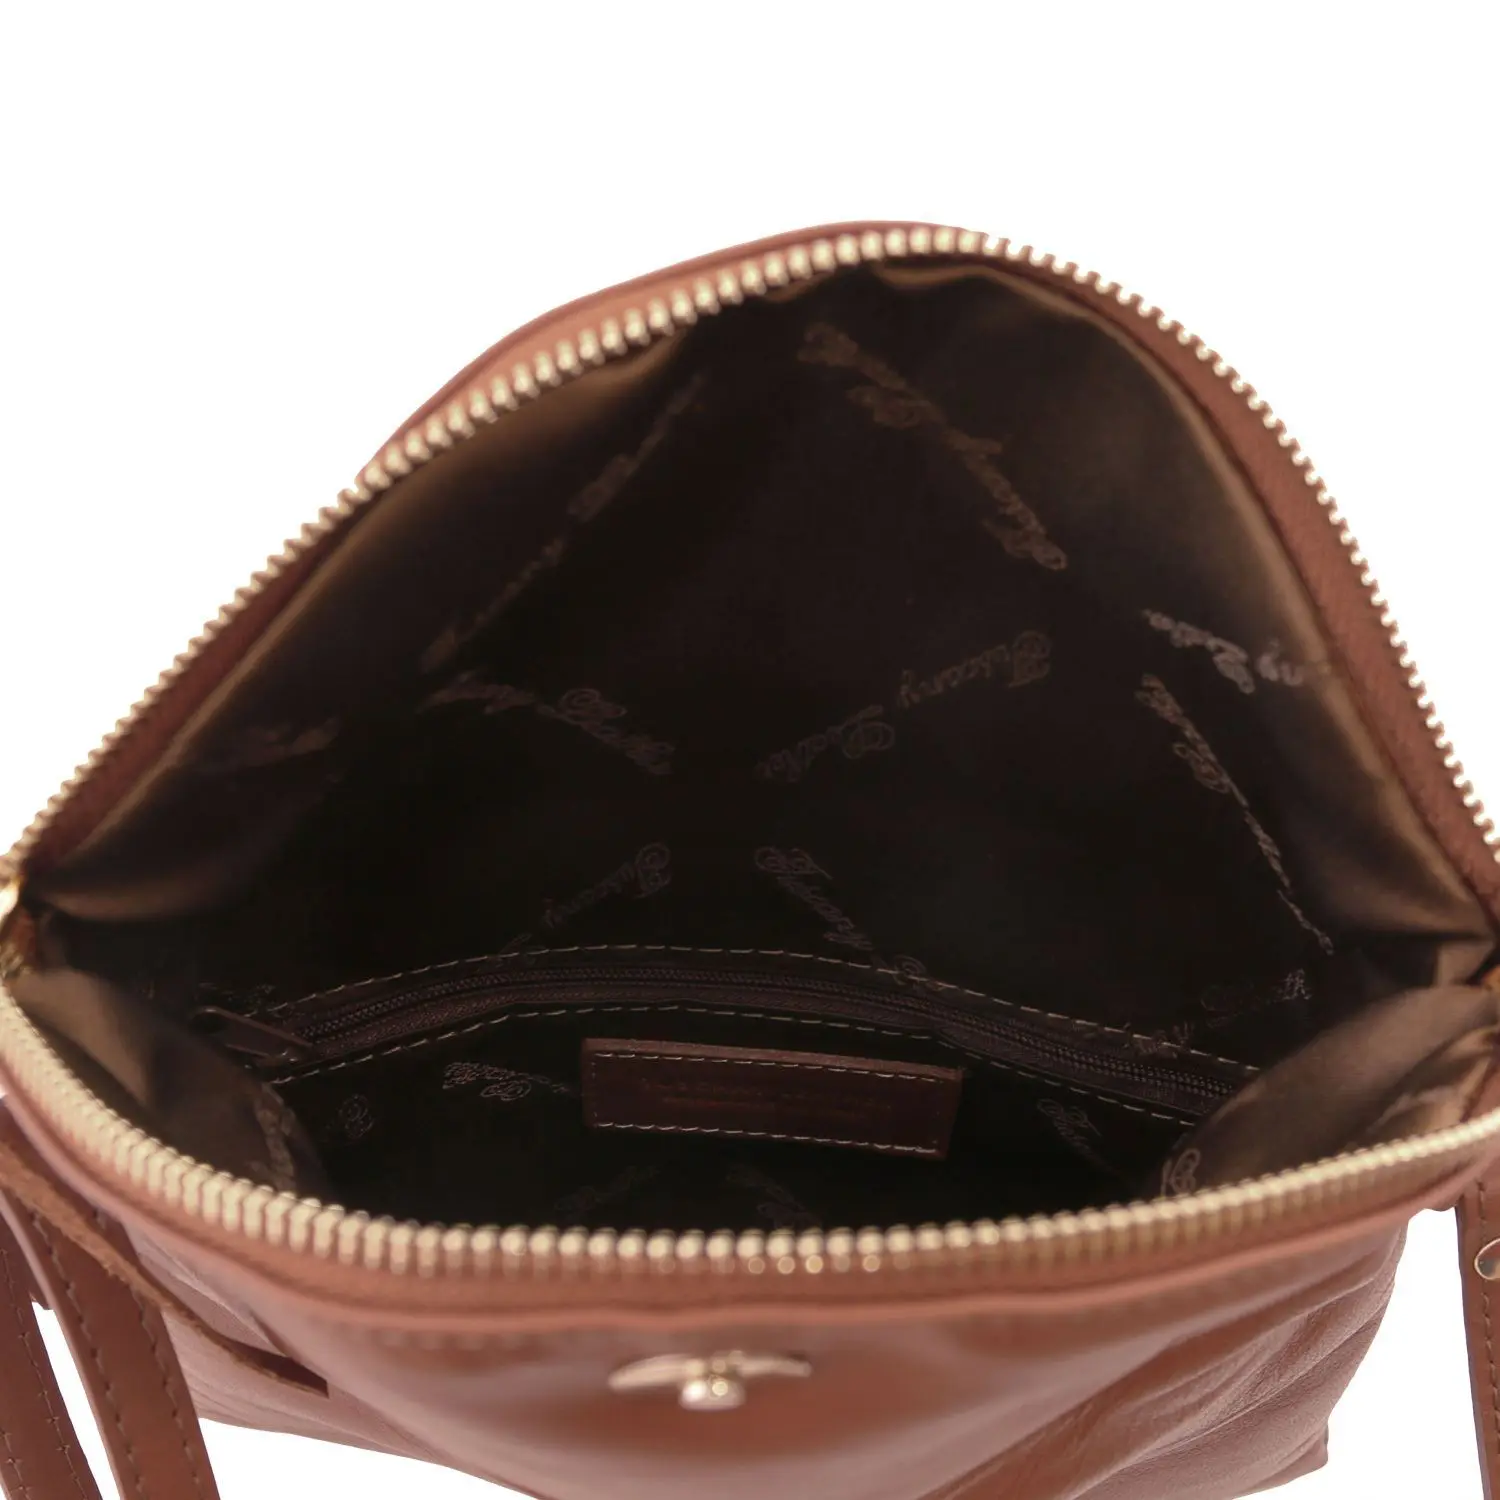 TL Young bag - Shoulder bag with tassel detail